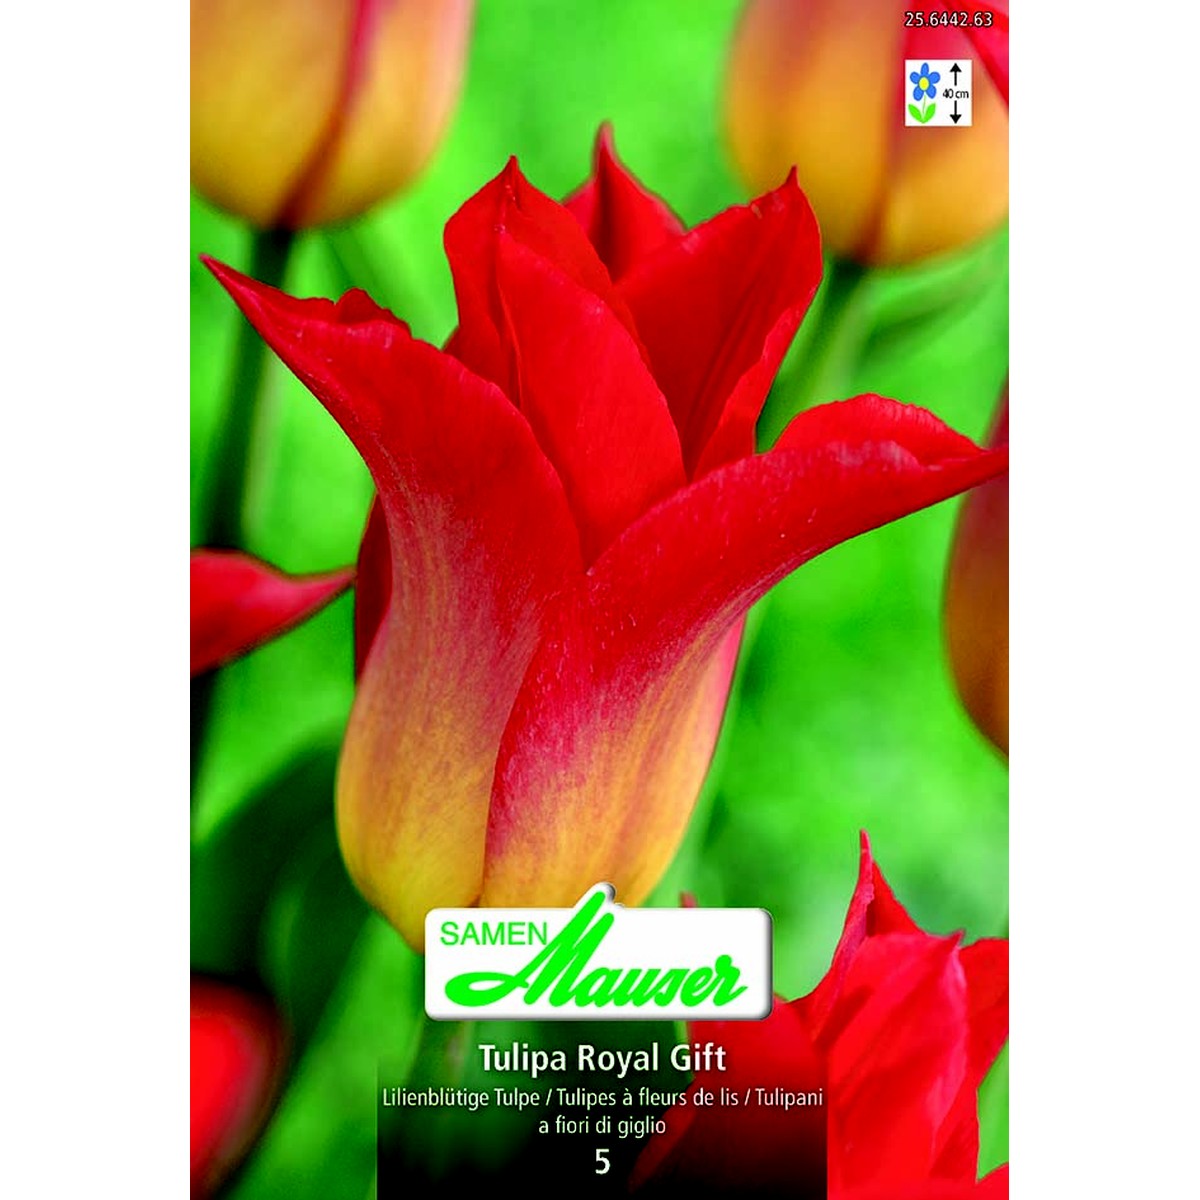   Tulipe LT Royal Gift 5  12/